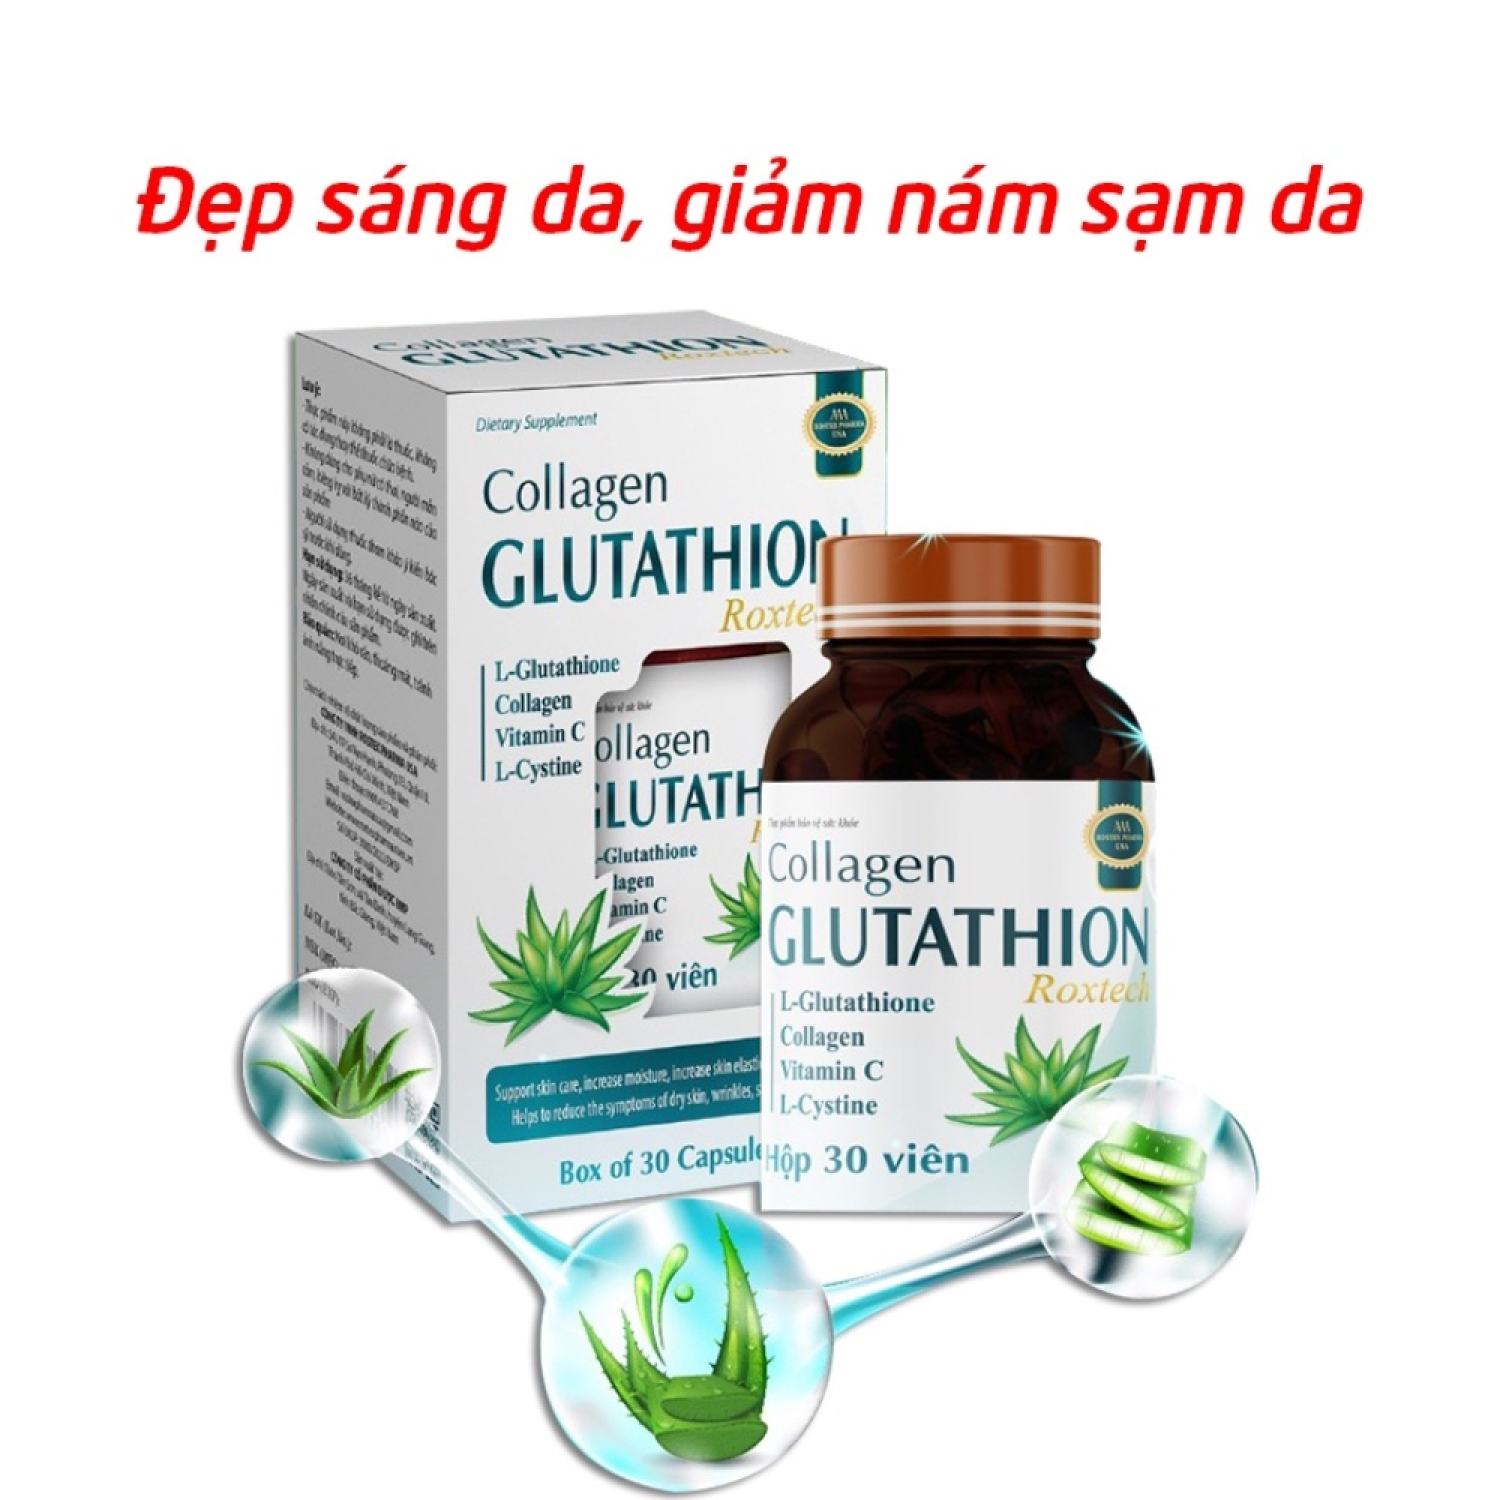 Collagen Glutathion ROXTECH, l-cystine đẹp sáng da, giảm na m sạm da